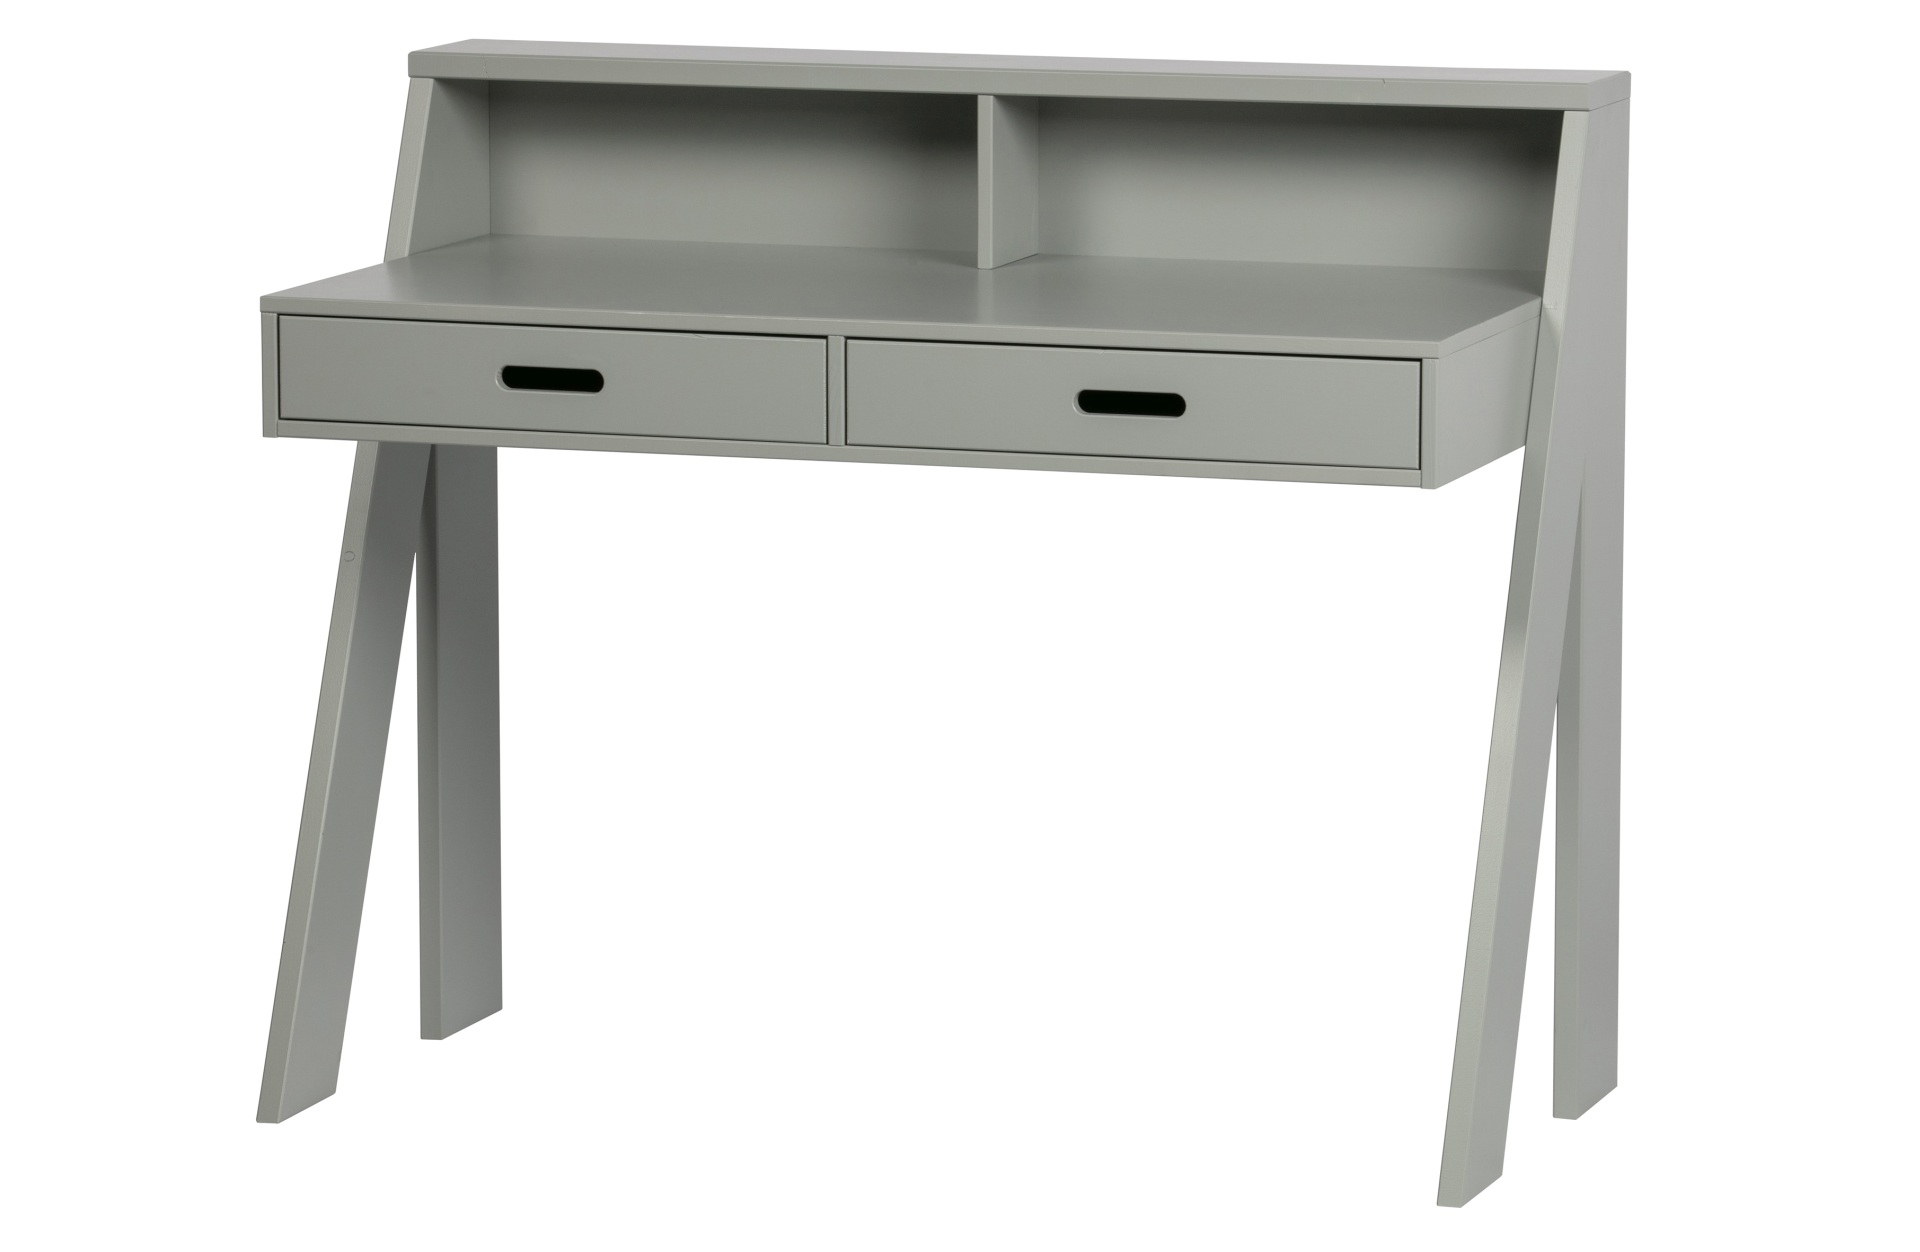 Der Schreibtisch Connect wurde aus Kiefernholz gefertigt. Er überzeugt mit seinem schlichten aber modernen Design. Der Schreibtisch verfügt über zwei Schubladen für diverse Utensilien und ist in einem grauen Farbton.